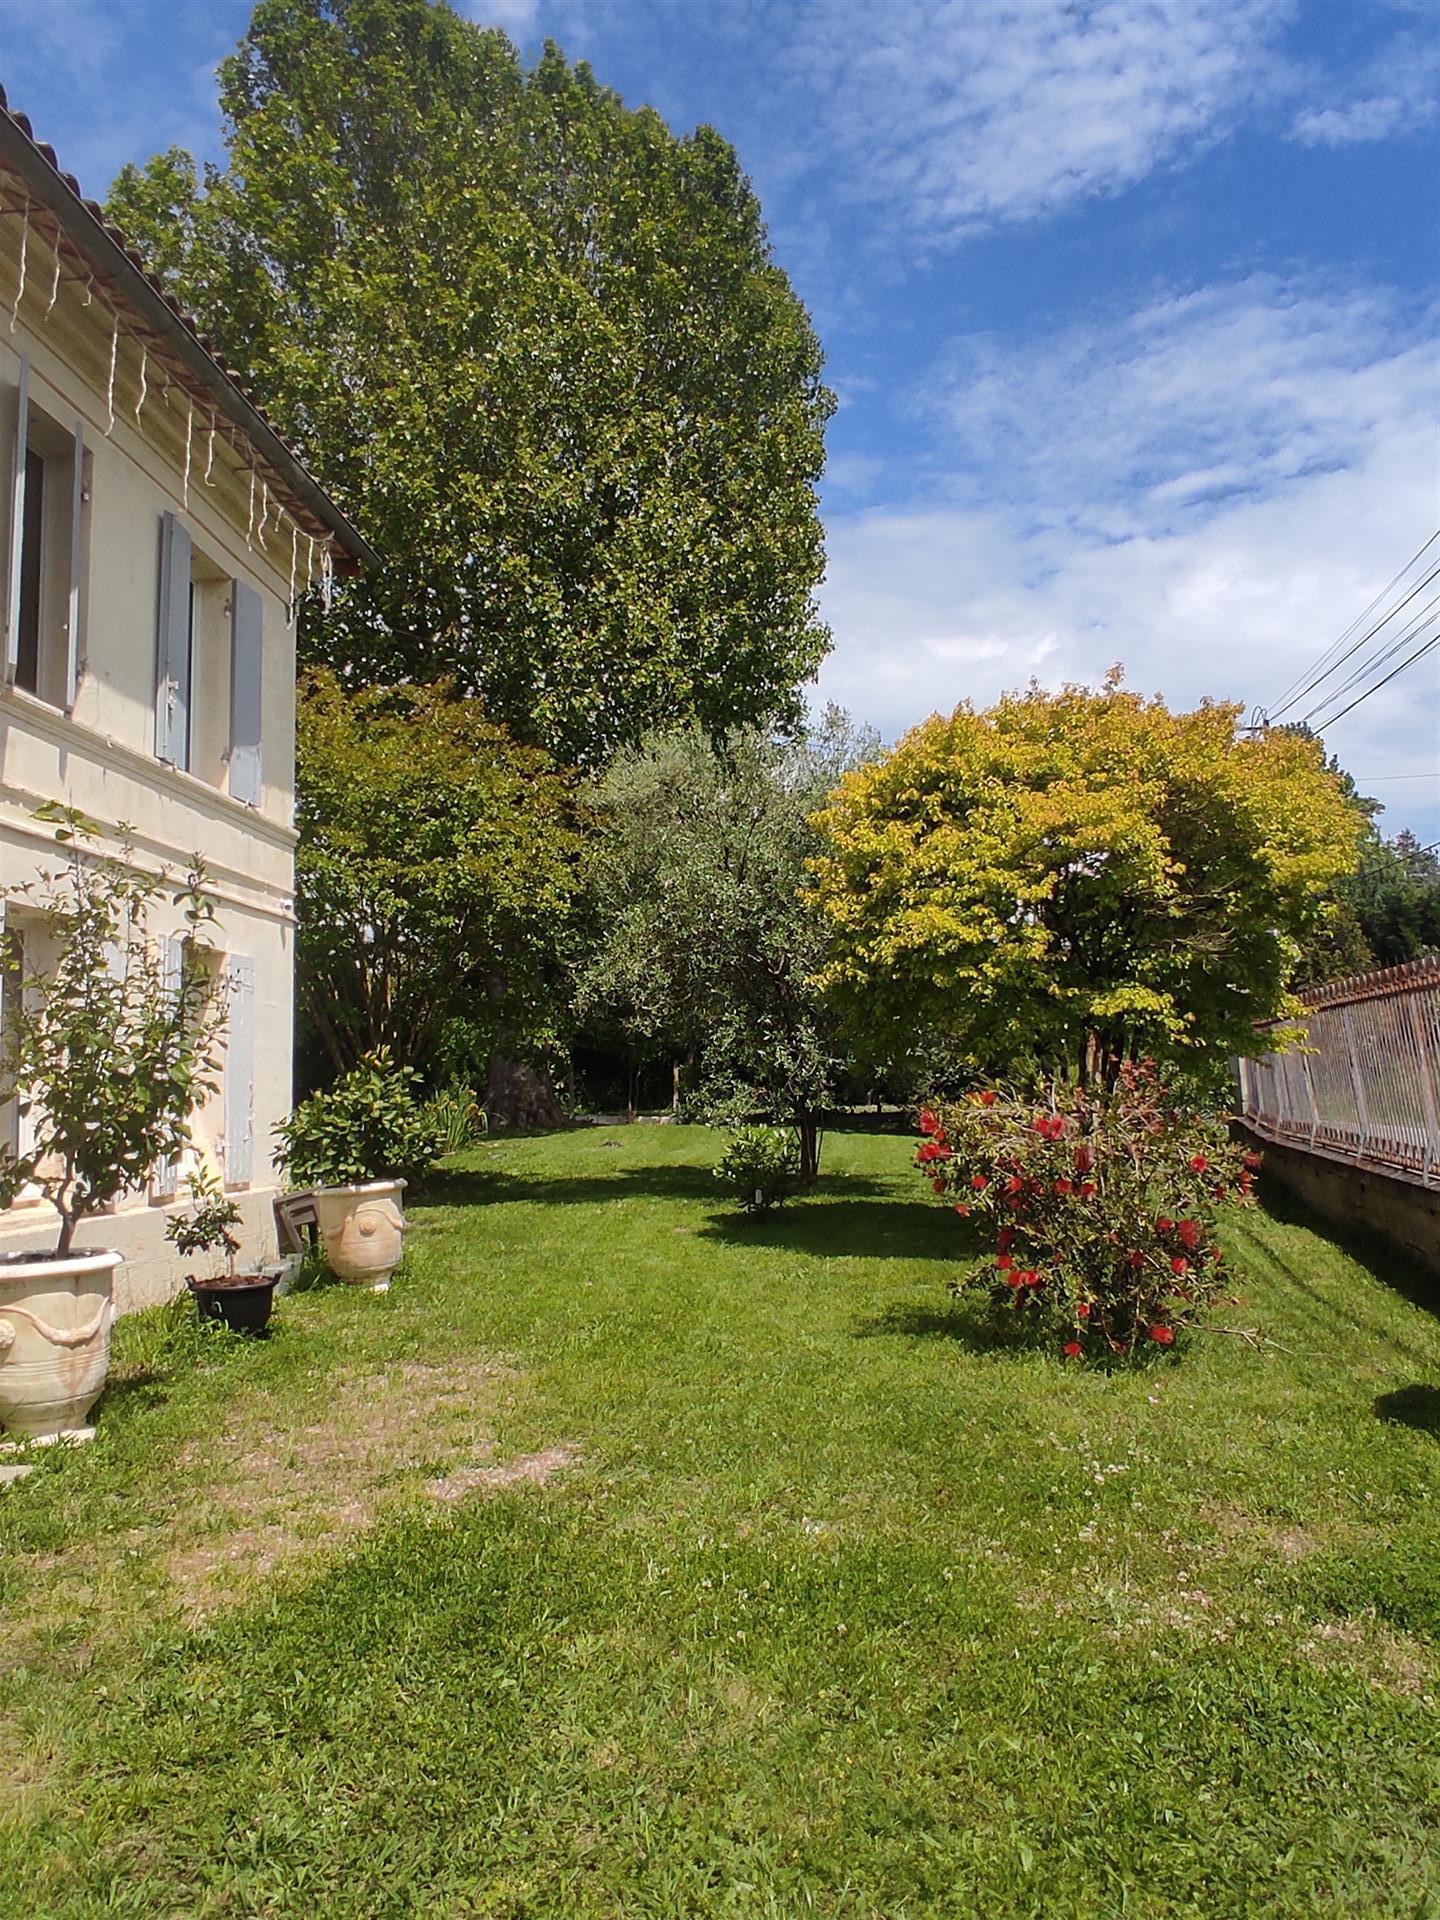 Μια σπάνια ευκαιρία να αγοράσετε ένα μεγάλο πέτρινο εξοχικό σπίτι στο Saint-Andre-de-Cubzac, 20 χιλ